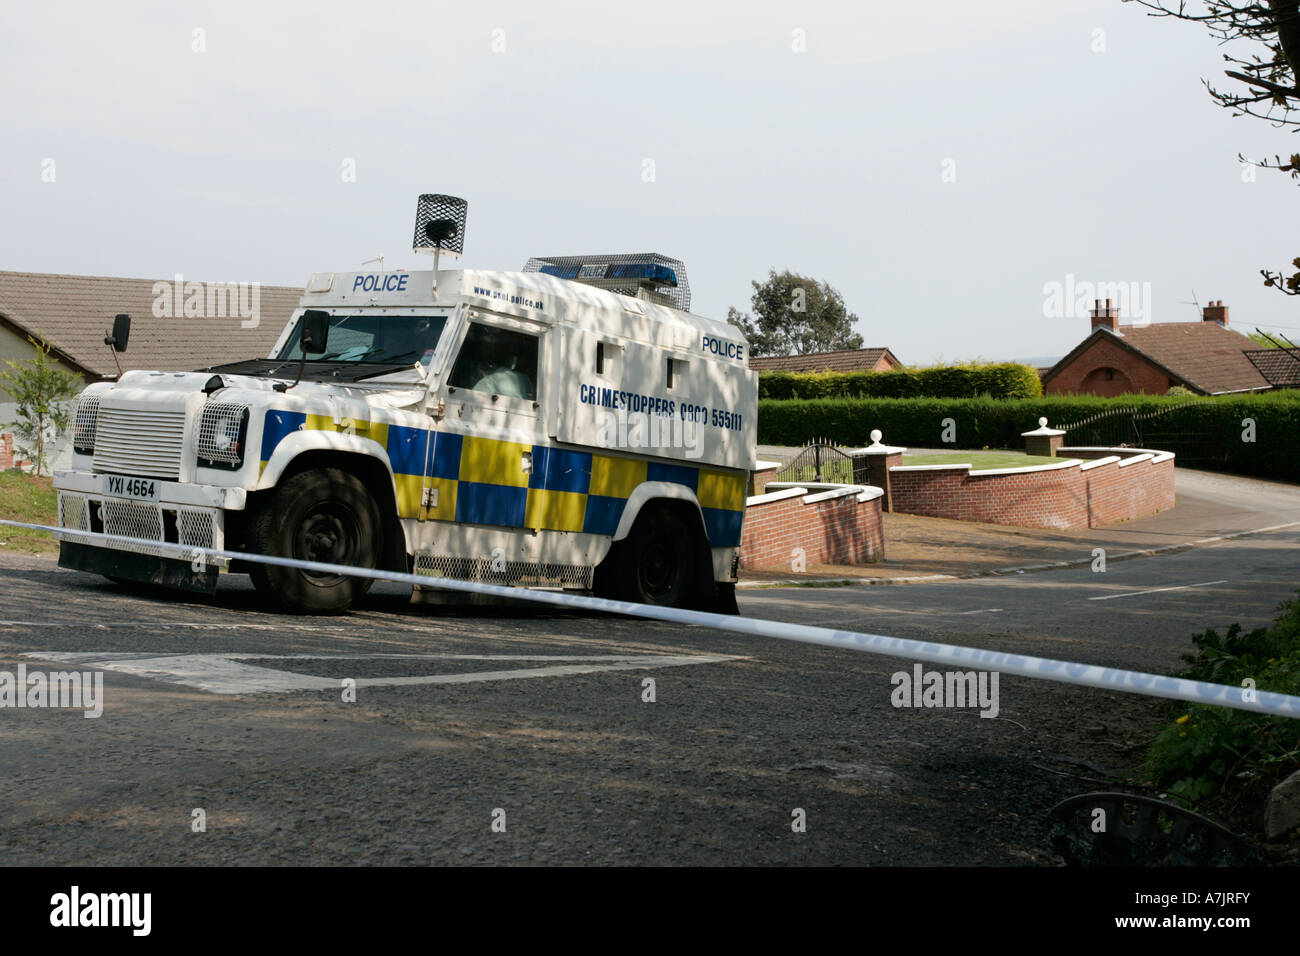 Land Rover police PSNI derrière la ligne bande à incident devant les maisons à l'extérieur de l'Irlande du Nord Belfast Banque D'Images